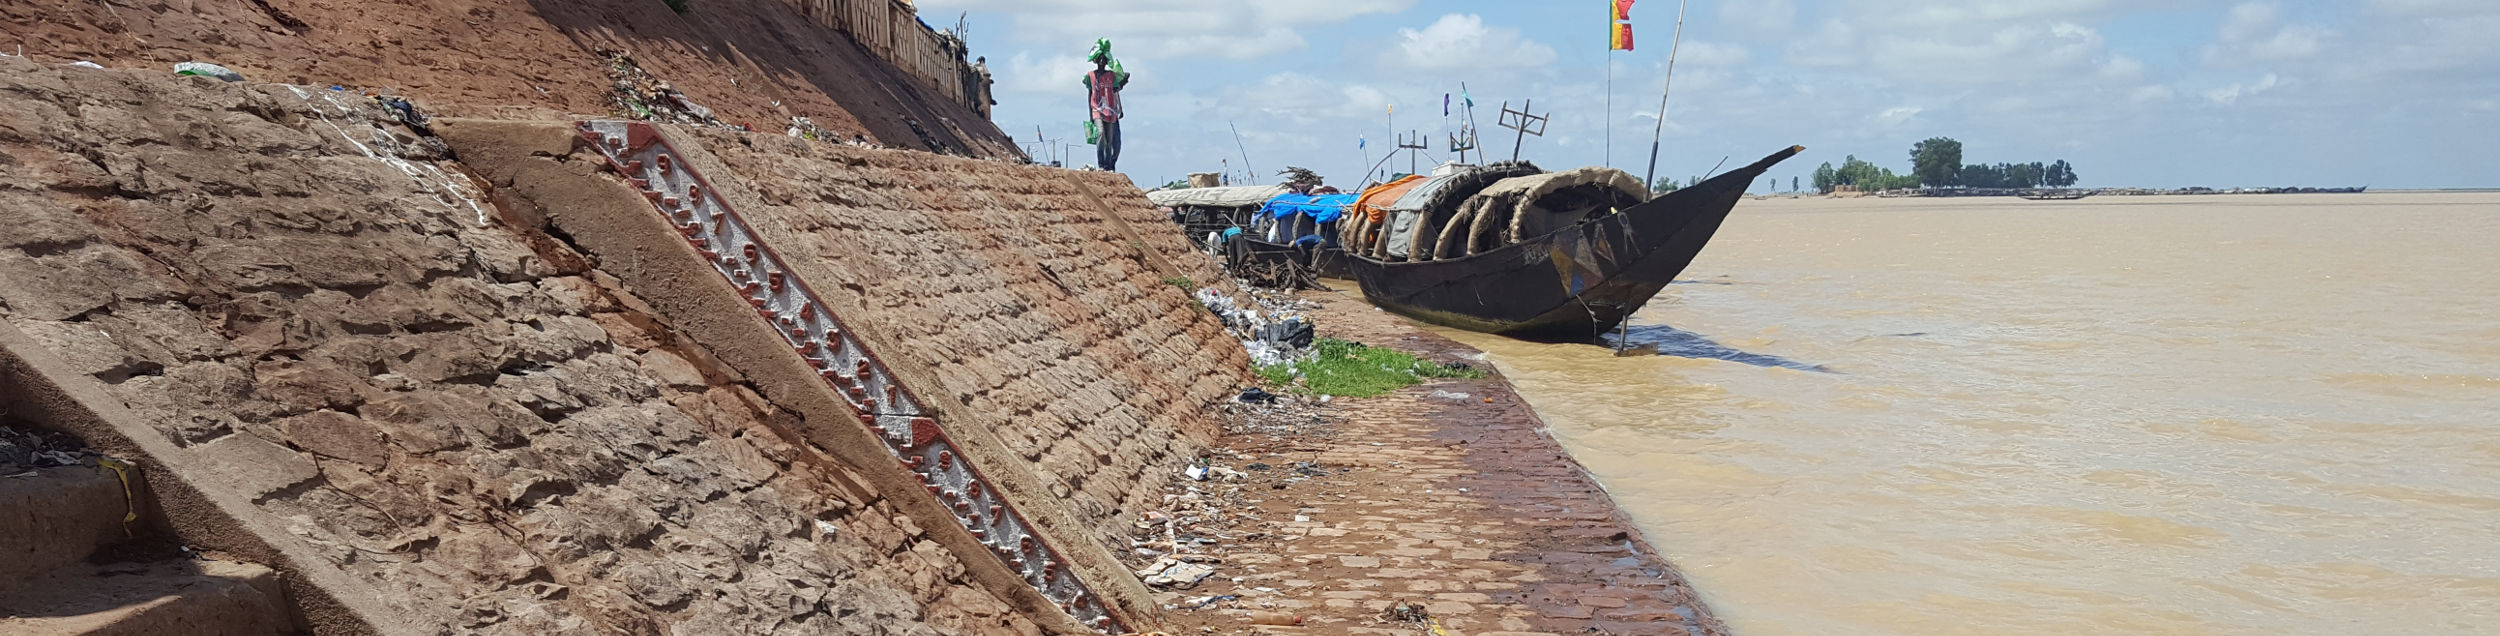 OPIDIN - Outil de Prédiction des Inondations dans le Delta Intérieur du Niger